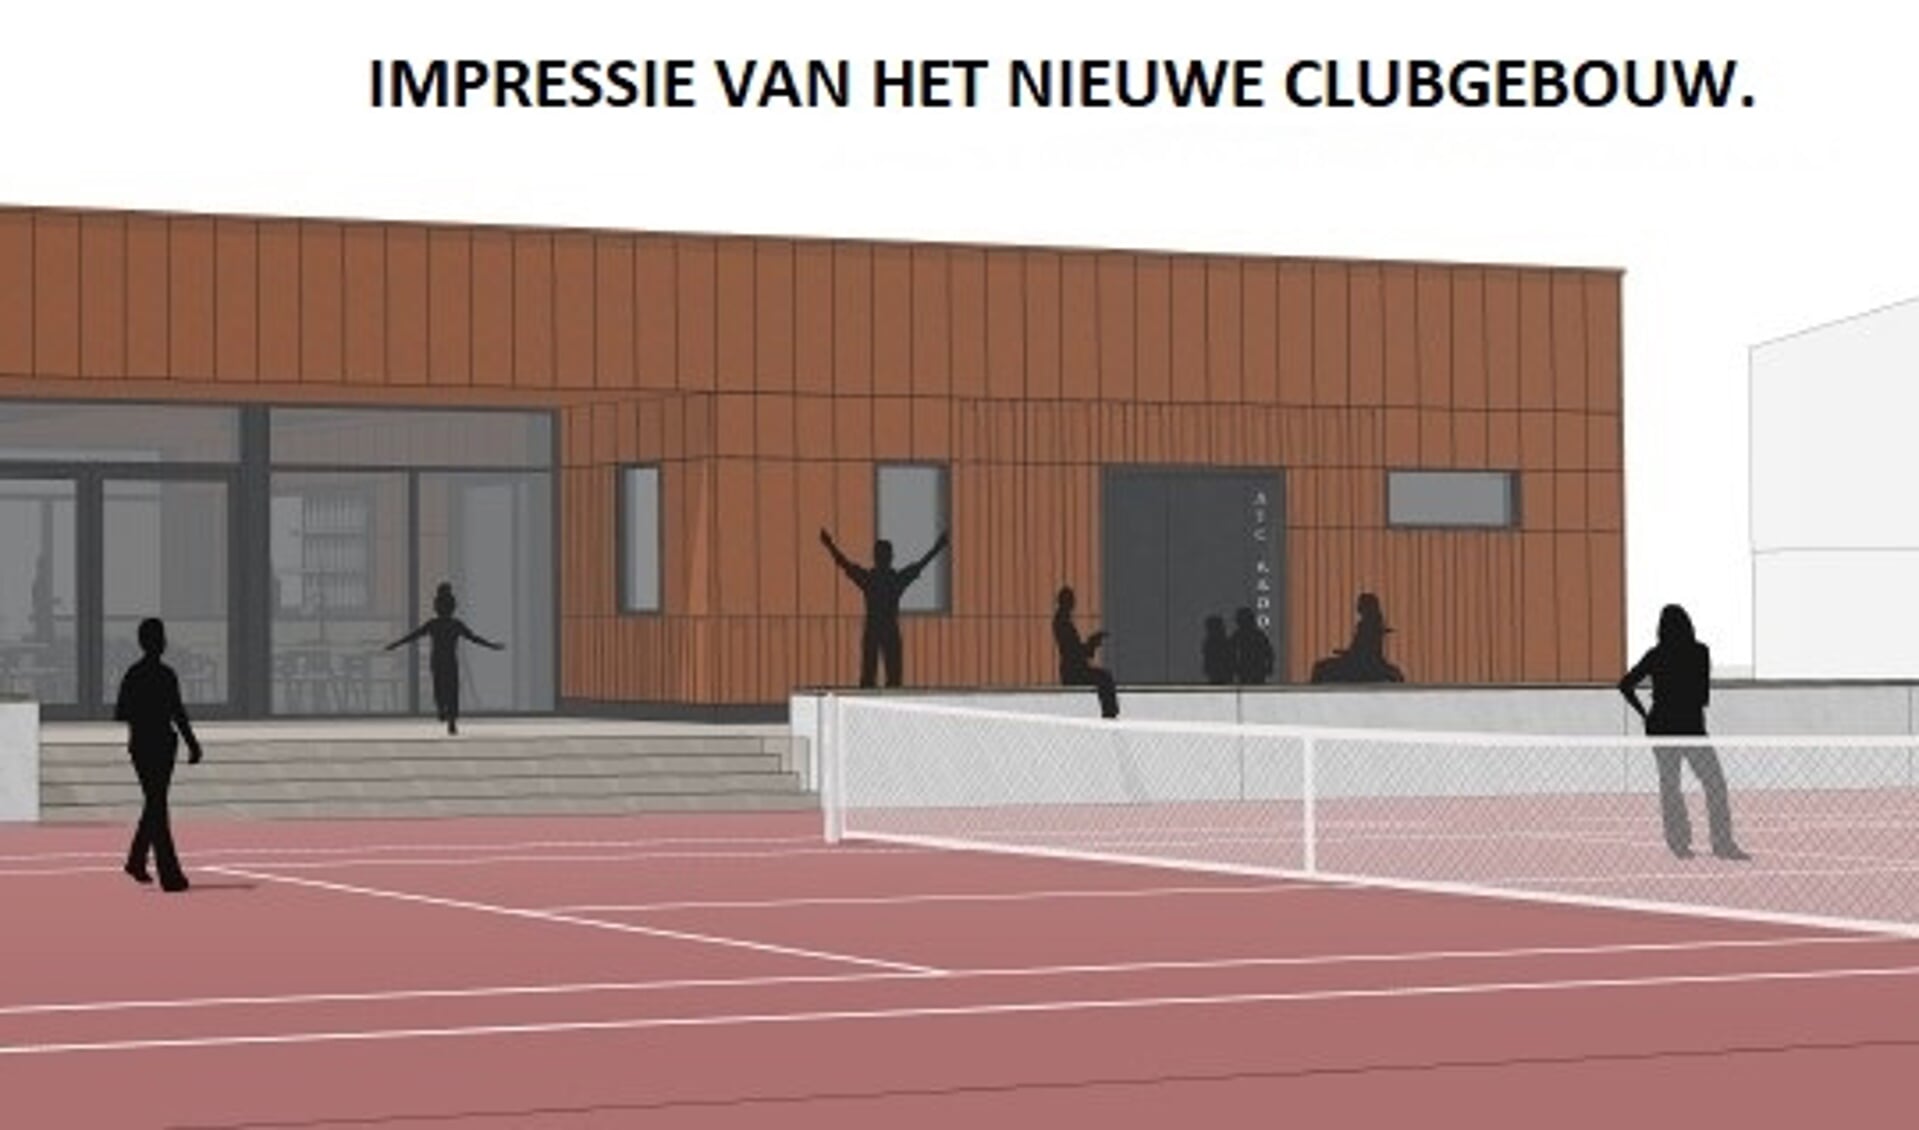 Impressie van het nieuwe clubgebouw van ATC Kadoelen.